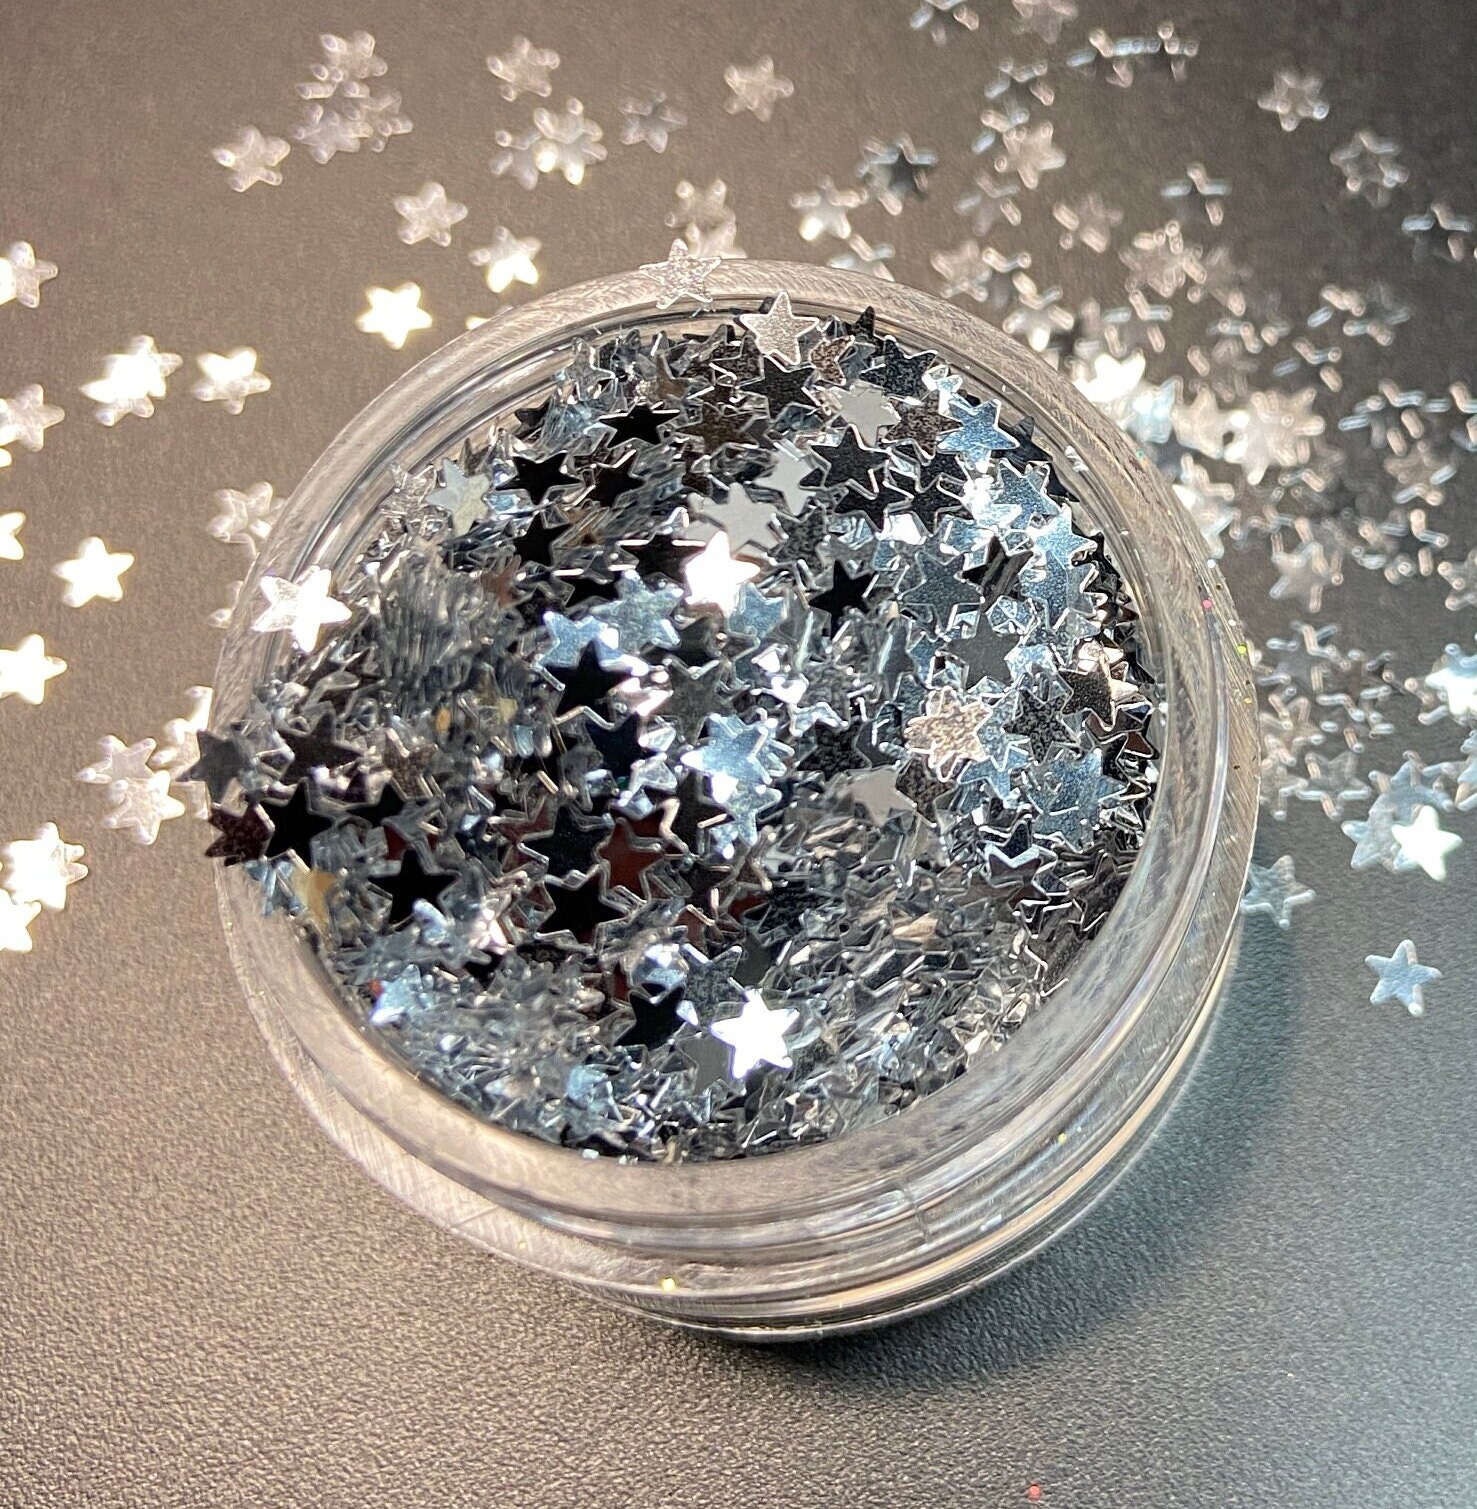 Chrome Silver Glitter Stars - Cosmetic grade glitter